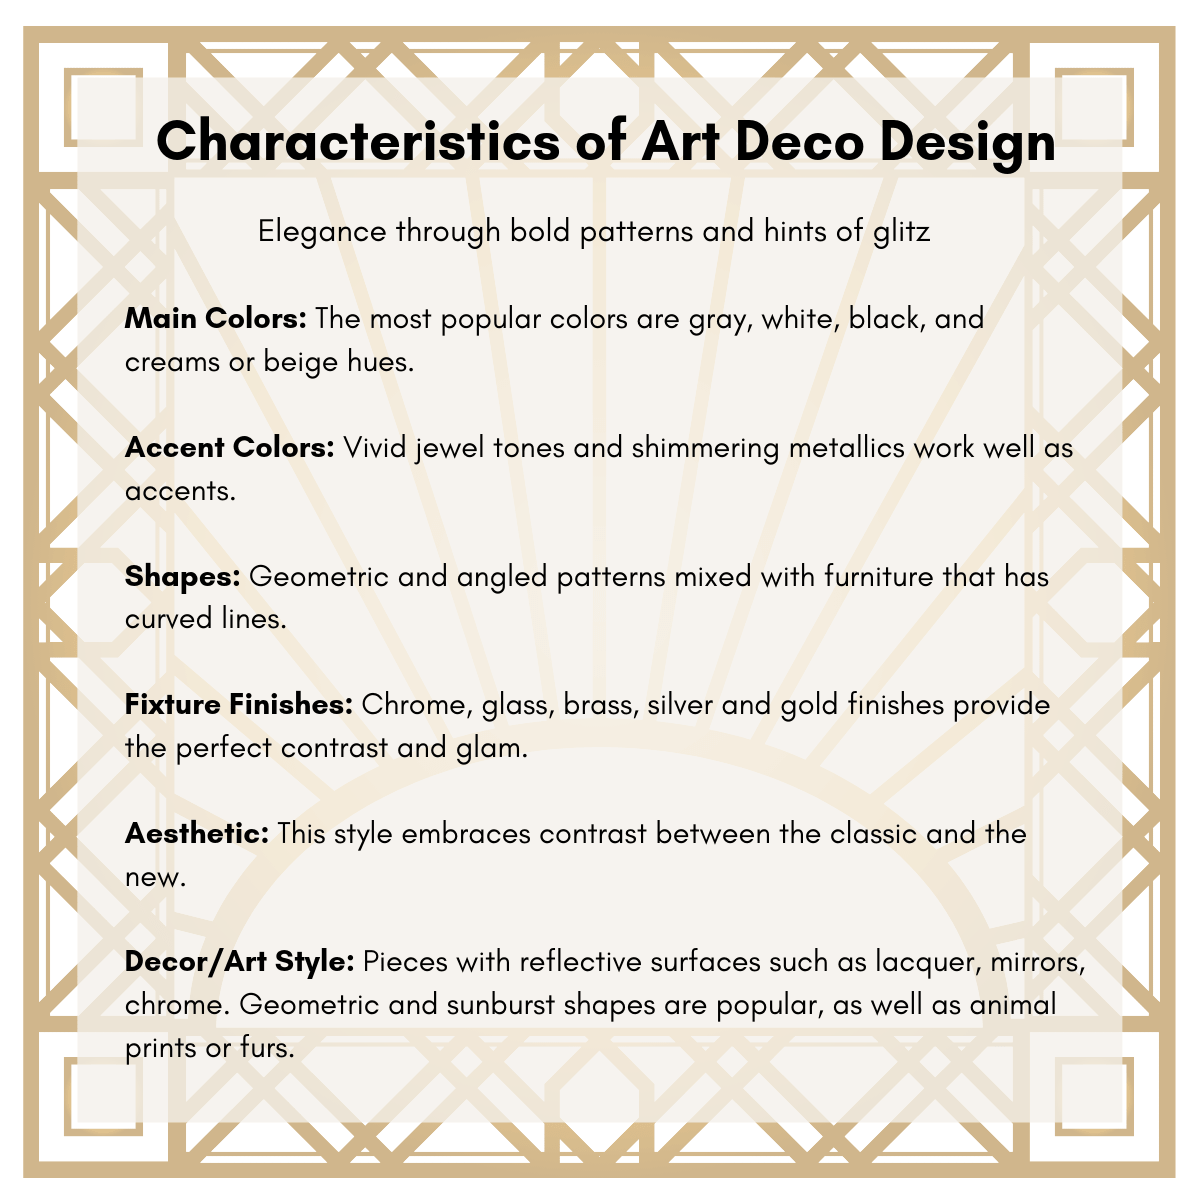 Art Deco design characteristics